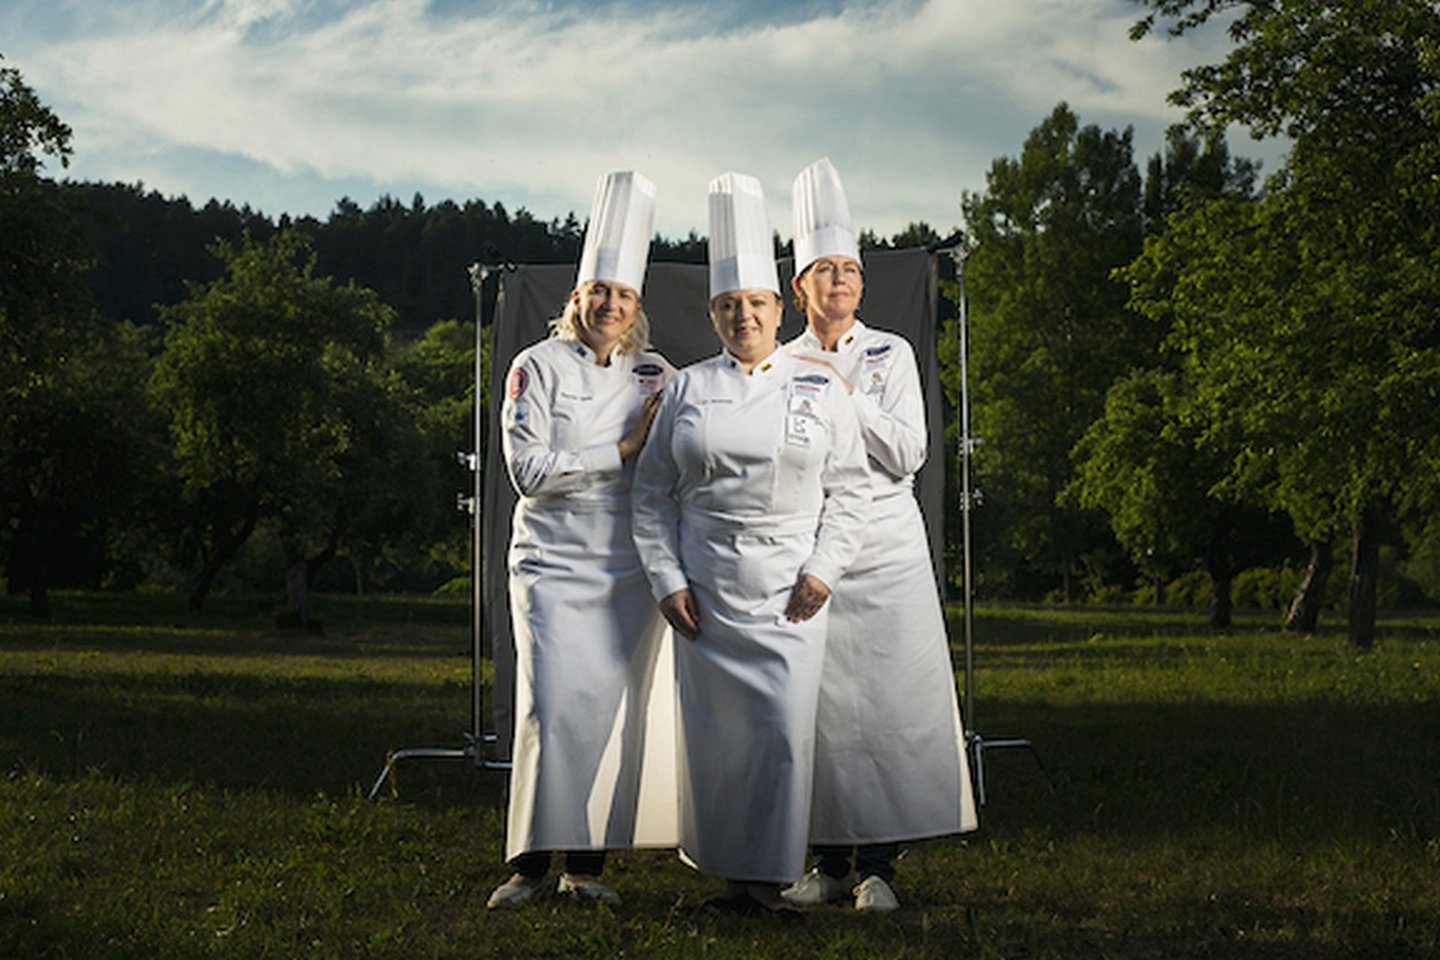  H.Lyndo, L.Makovska ir A.Gečienė išvyksta į Azijoje rengiamą kulinarijos konkursą.<br> R.Daskevičiaus nuotr.